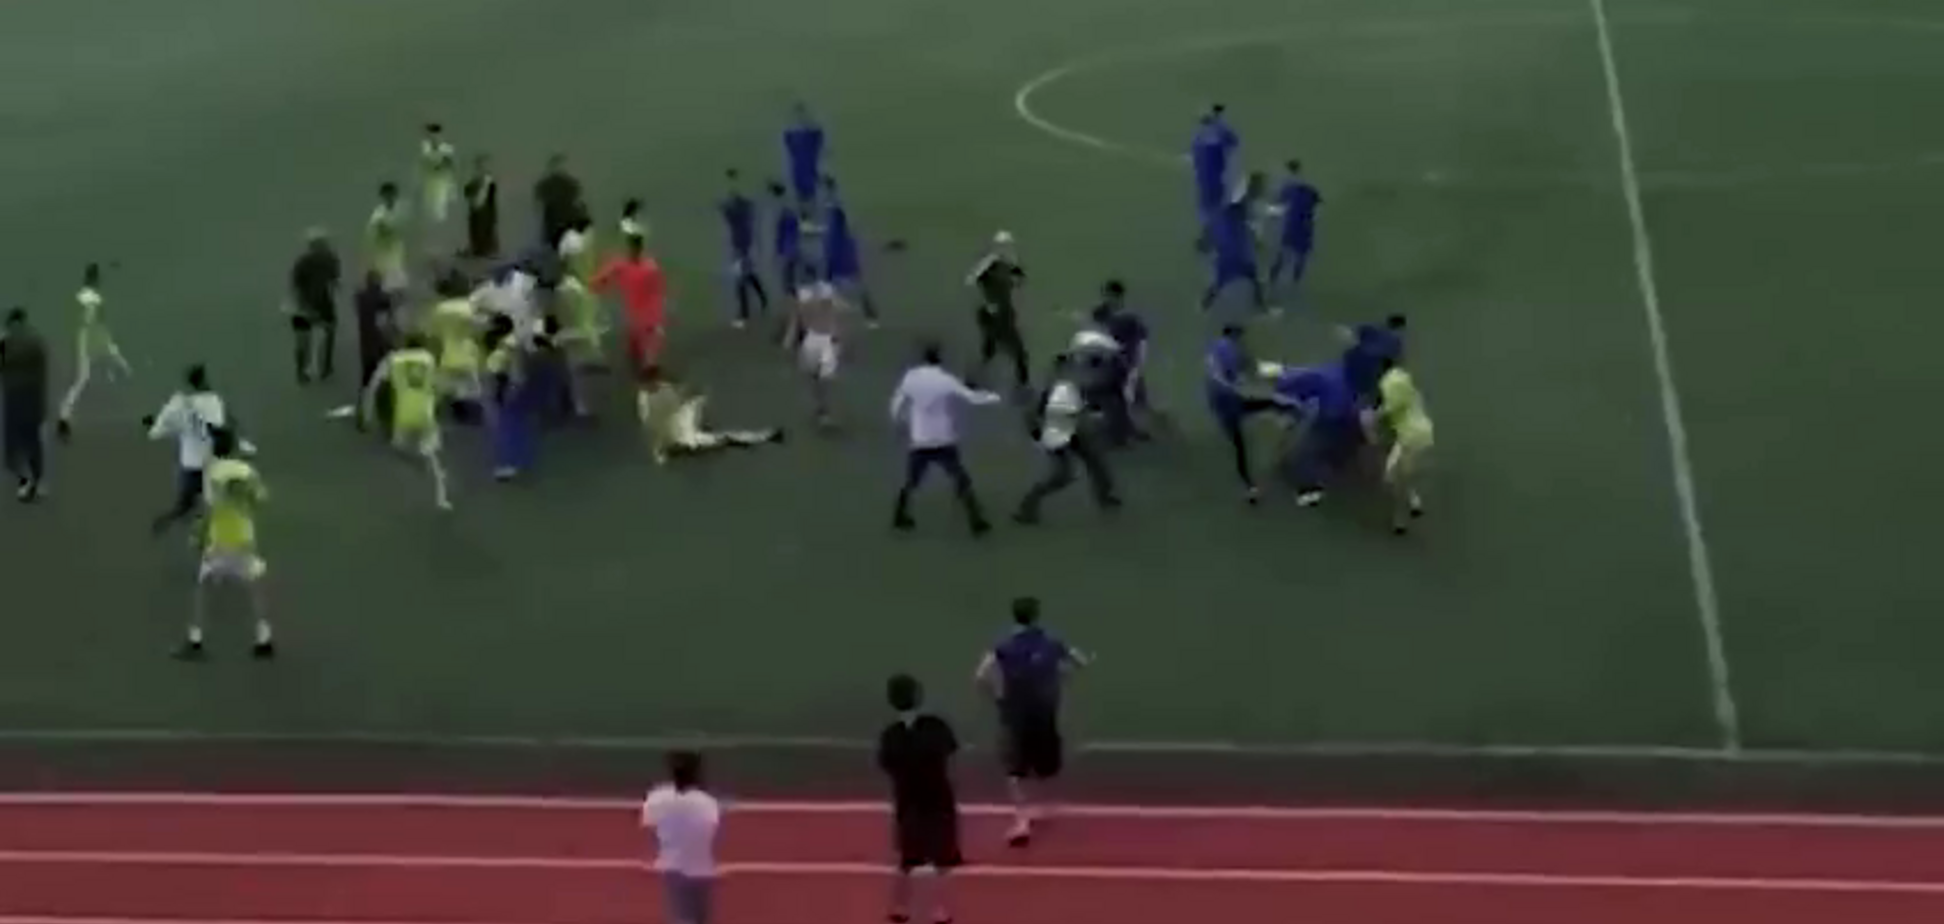 Дагестанский футболист гнусным поступком спровоцировал массовую драку на матче - видеофакт